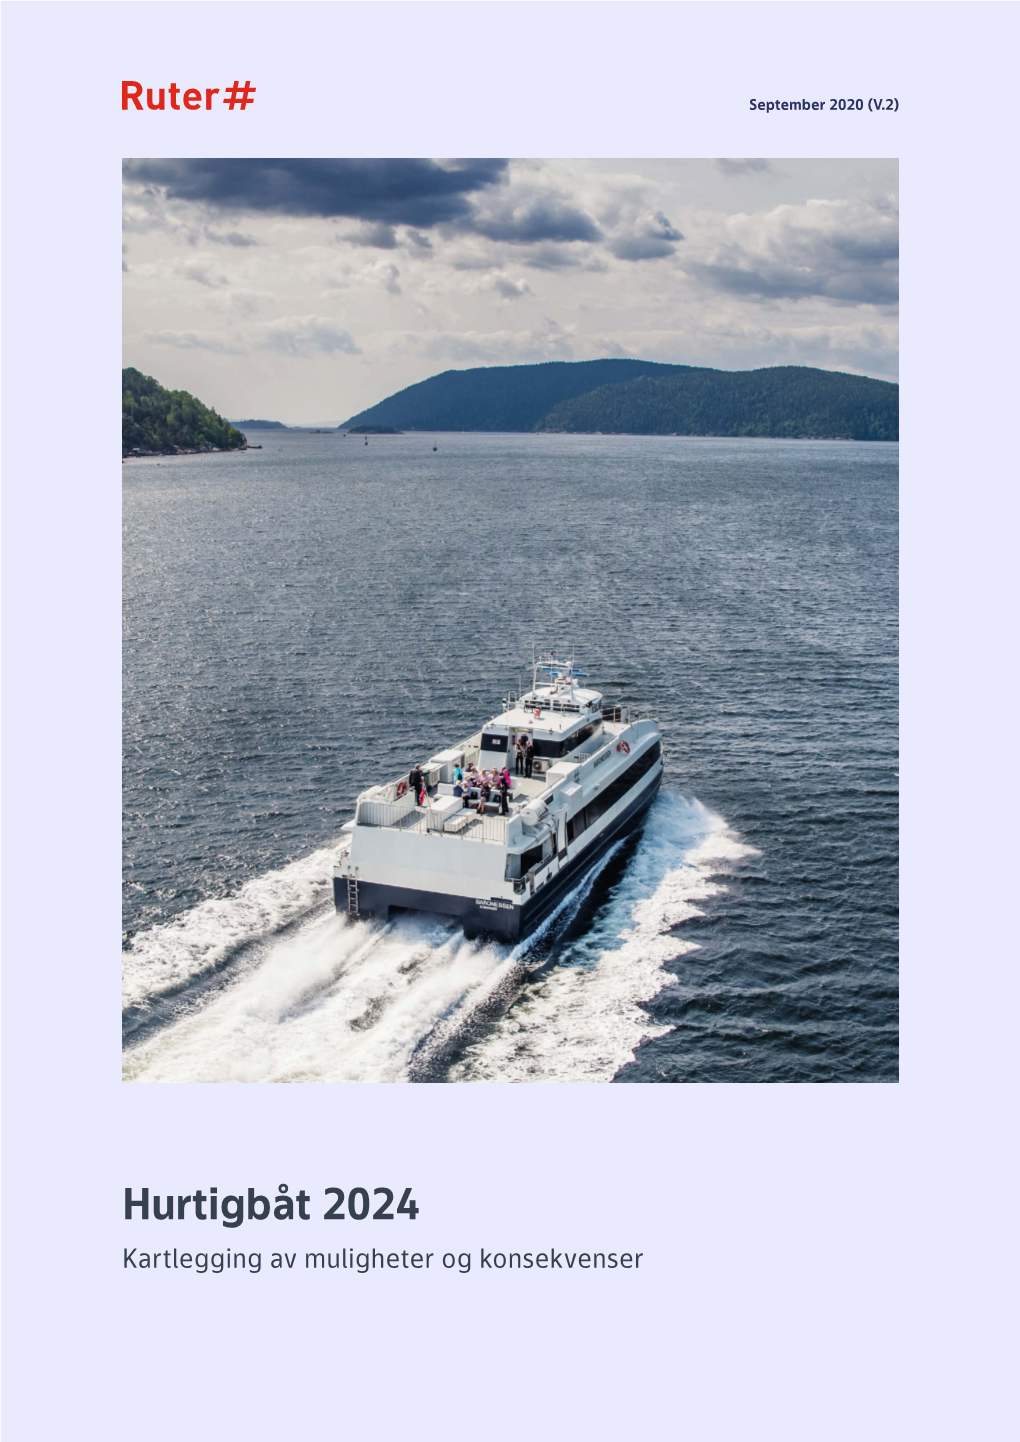 Hurtigbåt 2024 Kartlegging Av Muligheter Og Konsekvenser